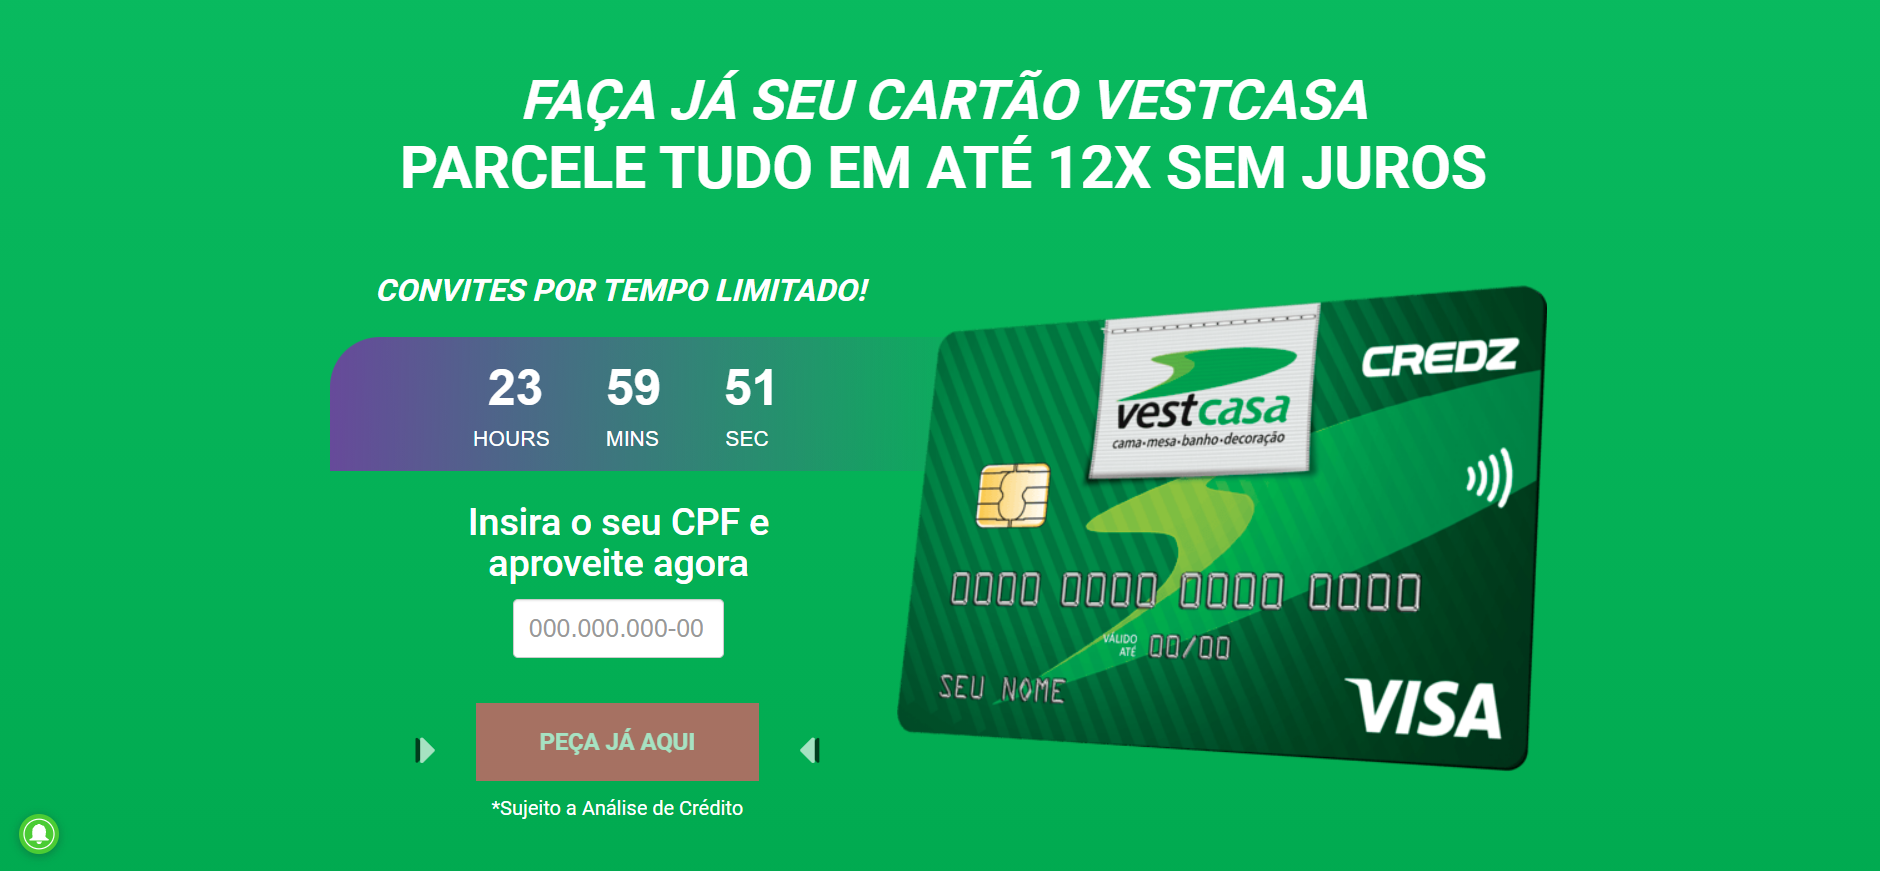 Review cartão VestCasa 2021. Fonte: VestCasa.